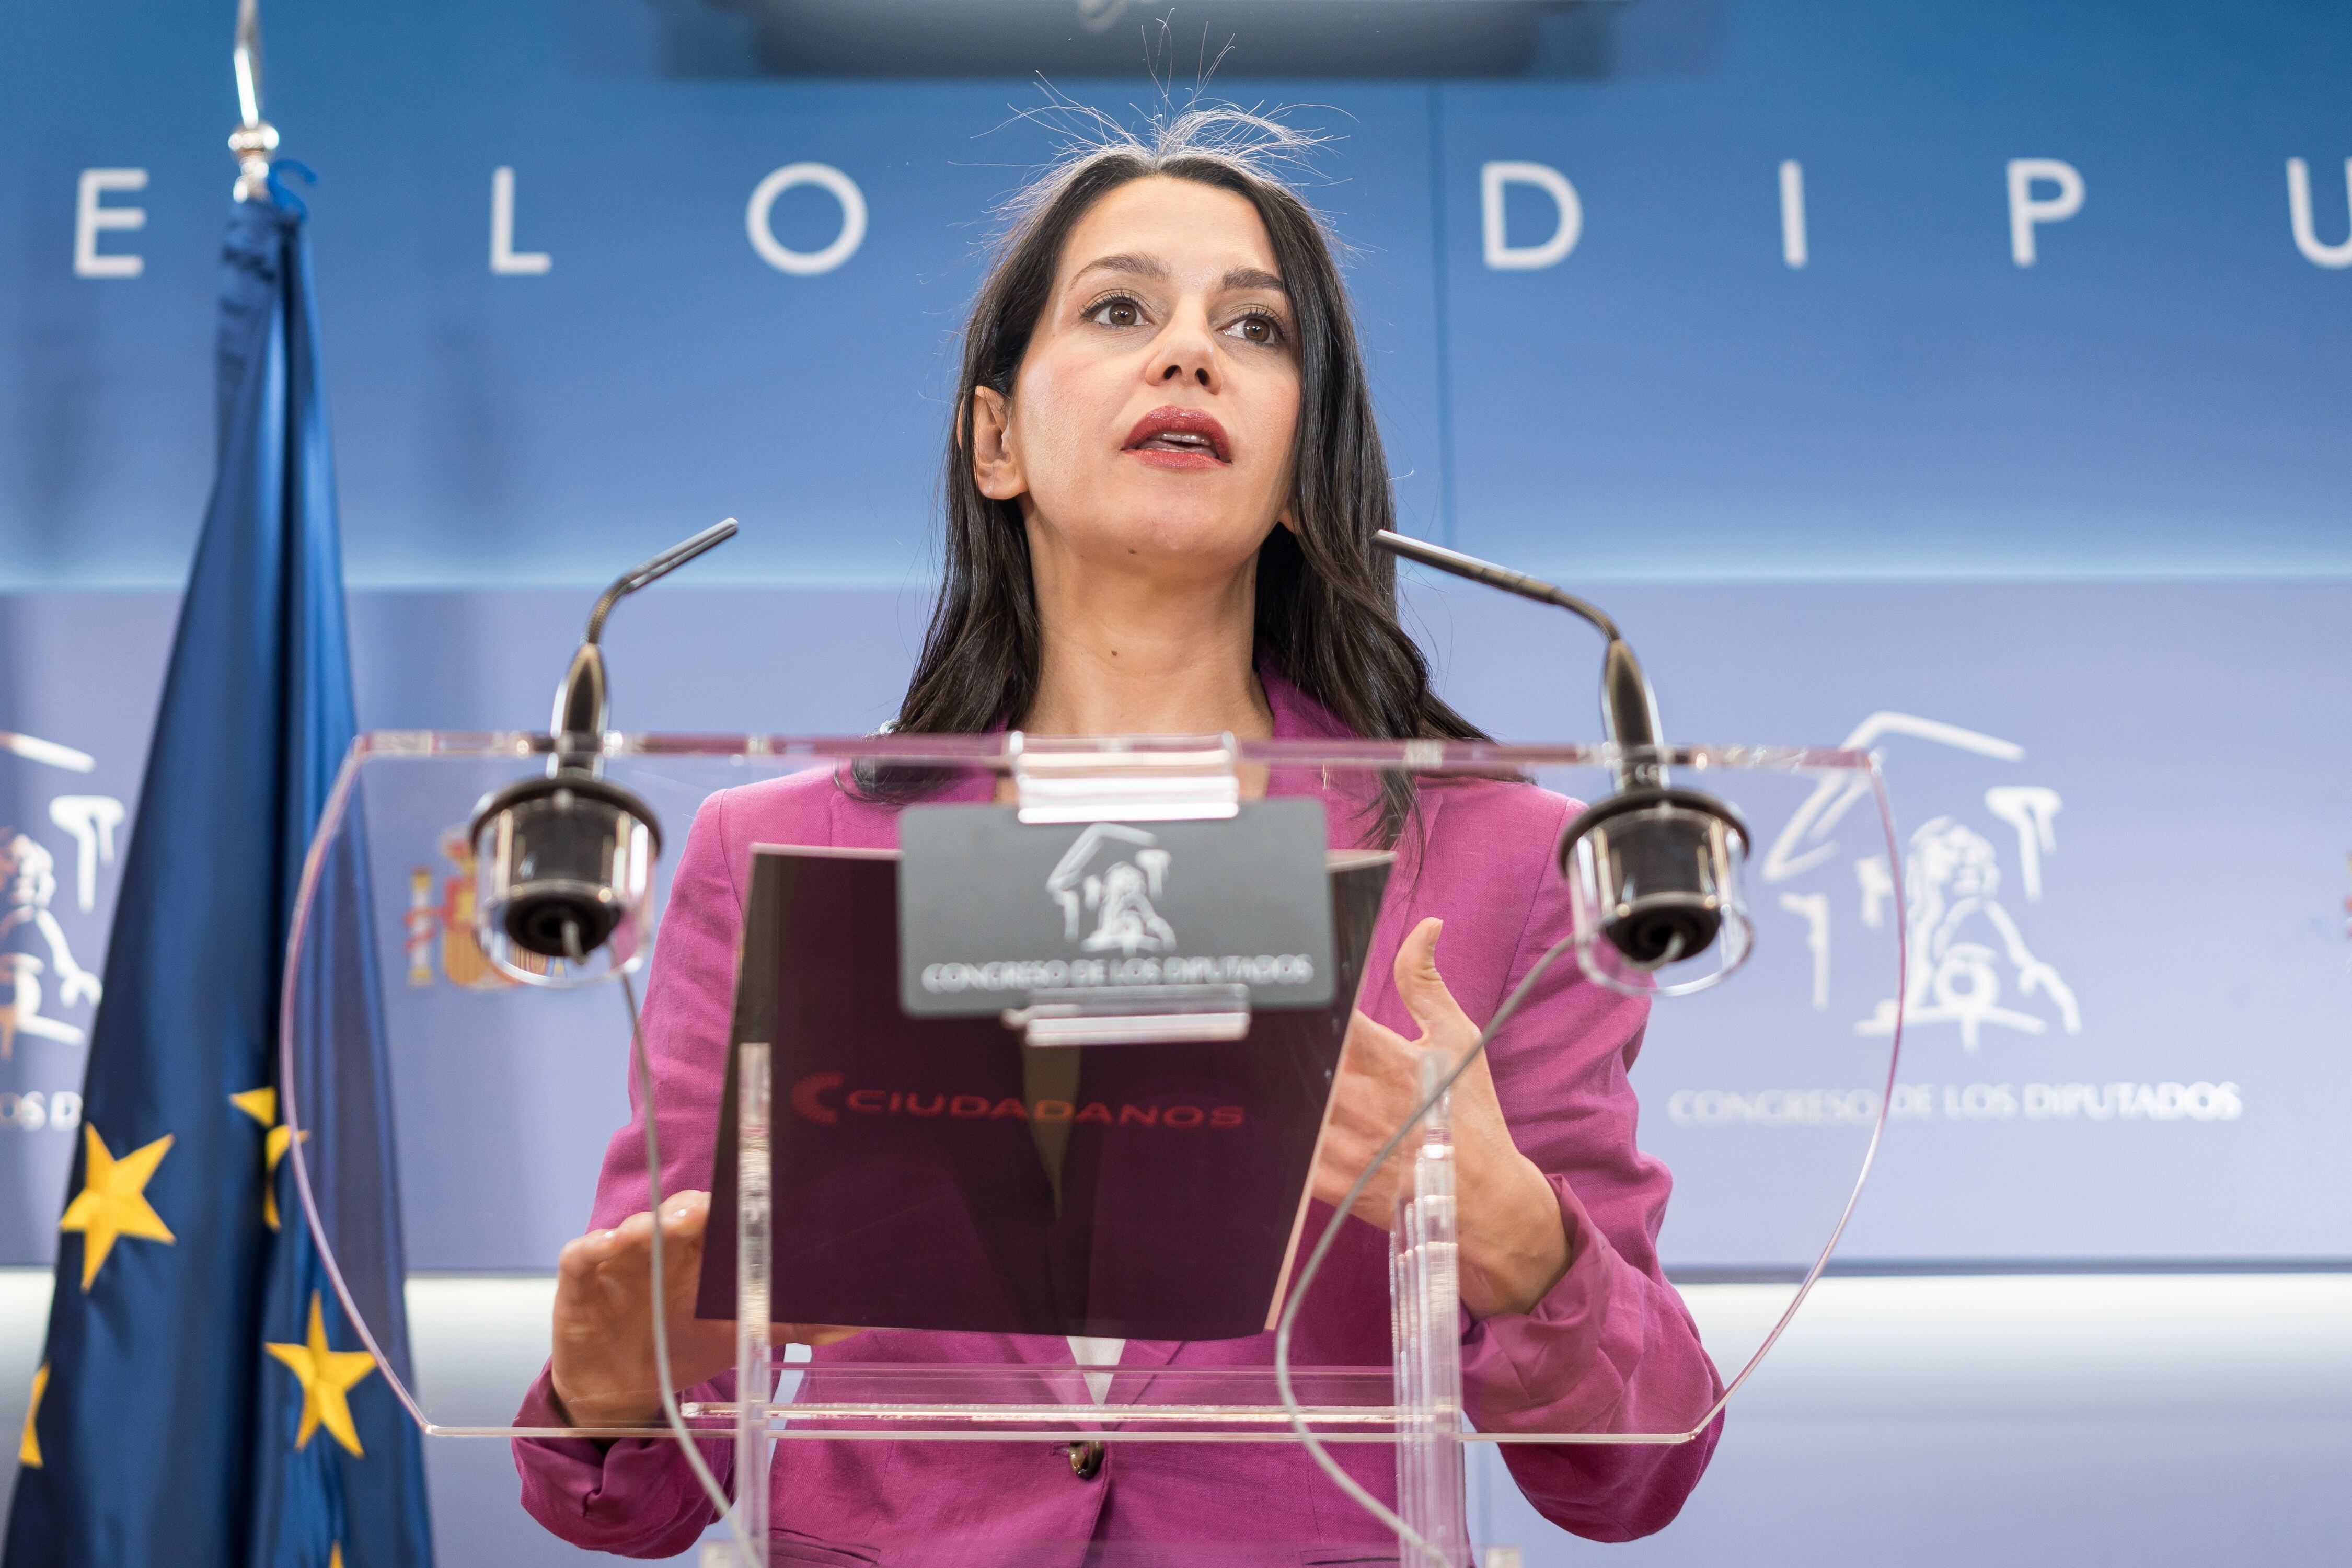 La portavoz de Ciudadanos en el Congreso, Inés Arrimadas, anuncia que deja la política. (Diego Radamés/Europa Press)